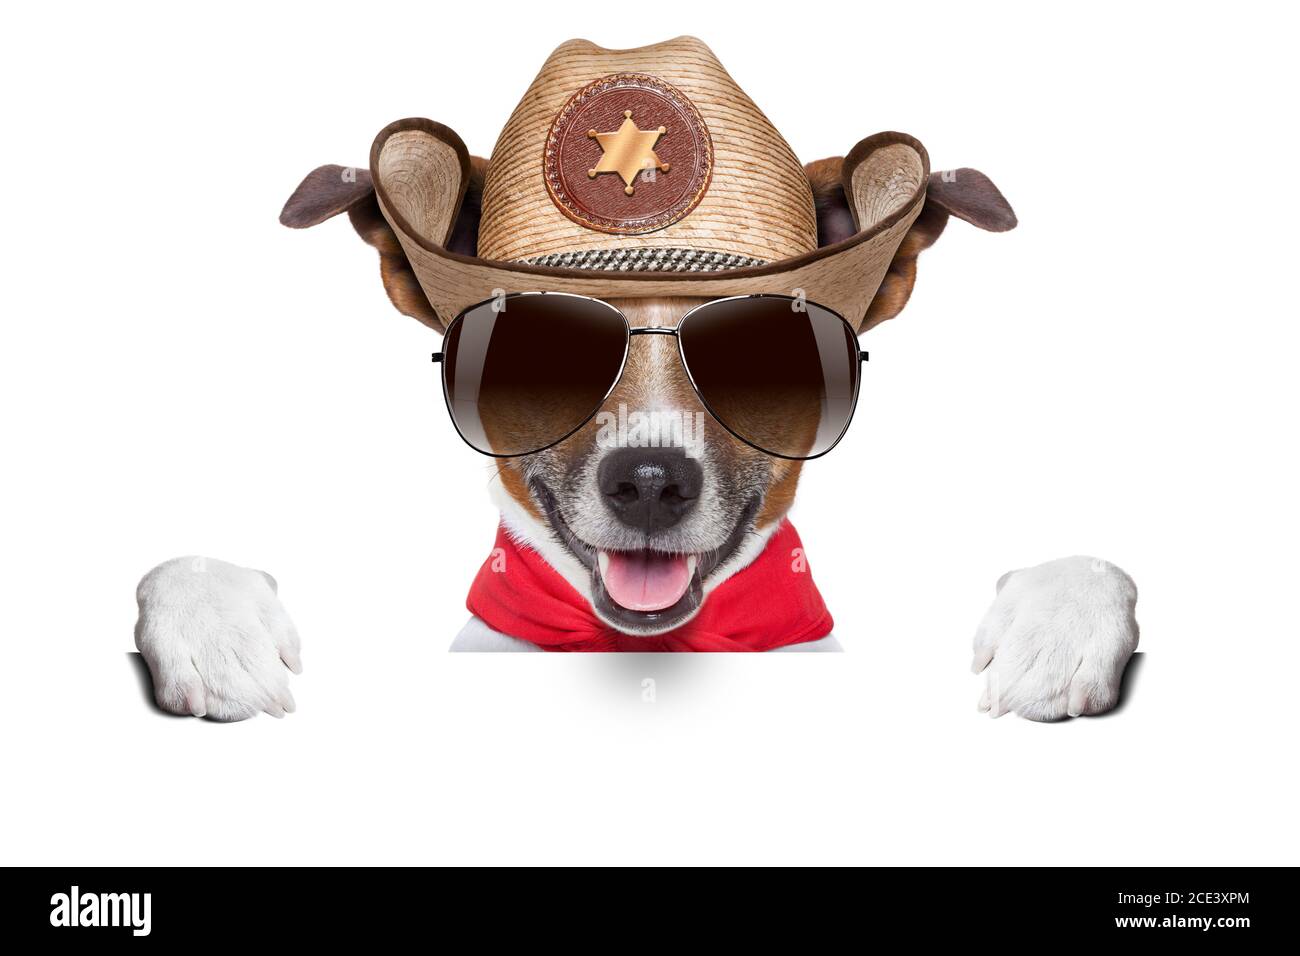 Собака ковбой. Собака в ковбойской шляпе. Пес в ковбойской шляпе арт. Игра собака в ковбойской шляпе. Собачка ковбой в зеленой шляпе.